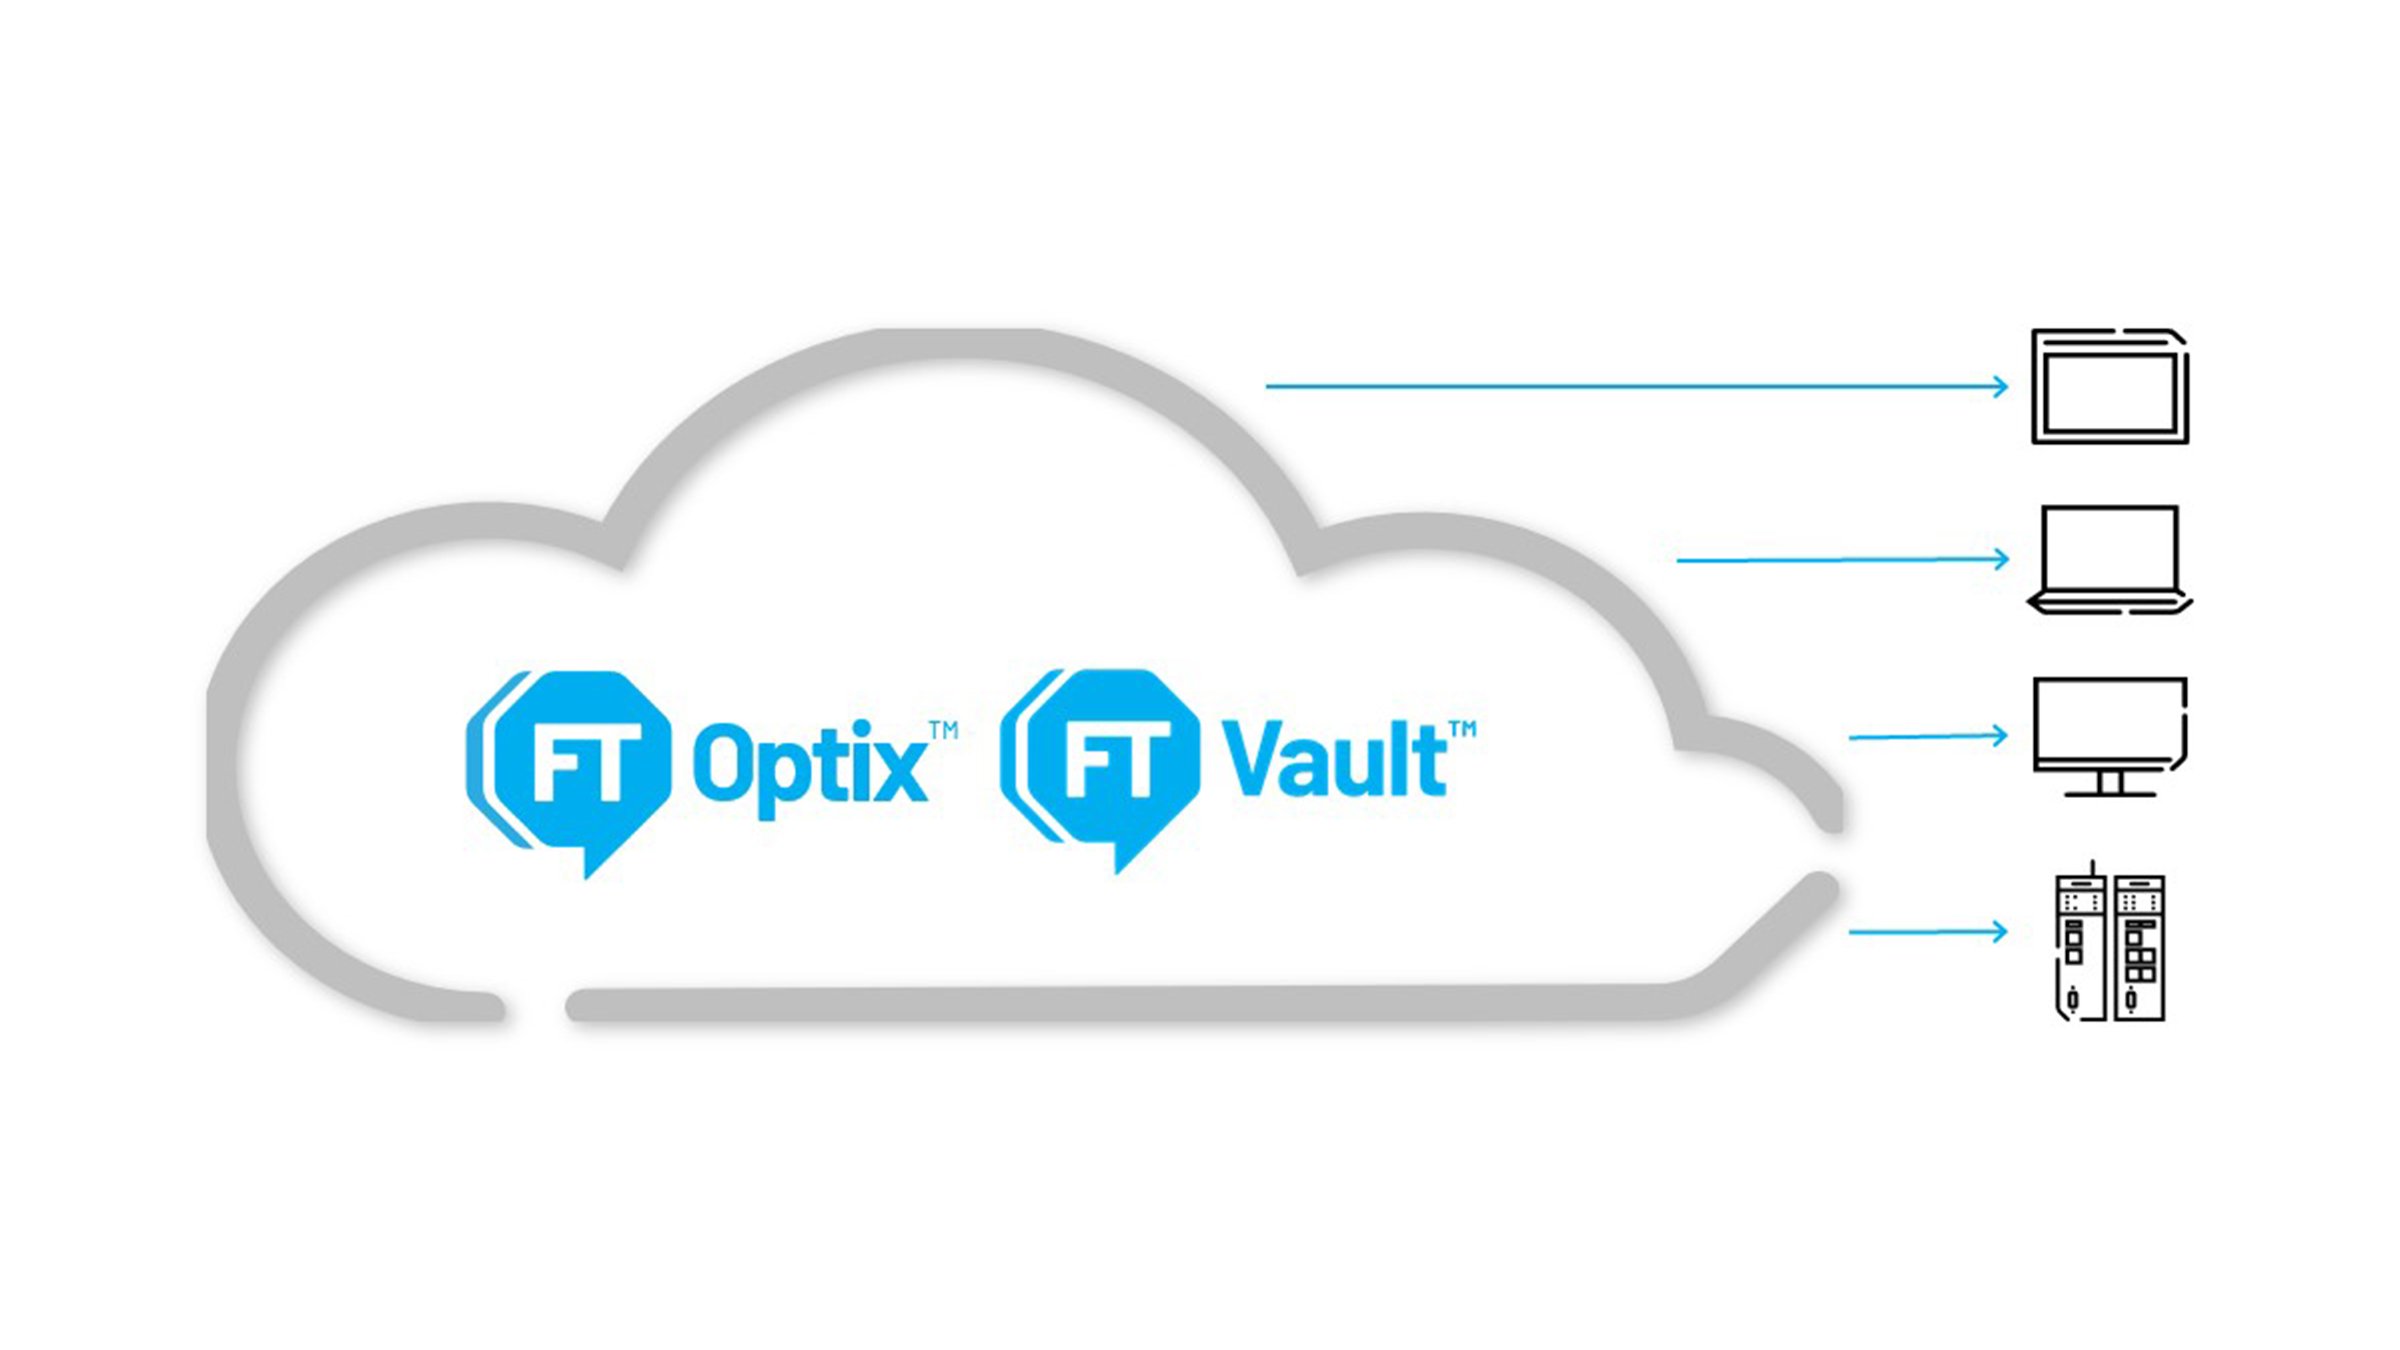 使用 FactoryTalk Optix 和 Vault 改进协作、可扩展性和互操作性以实现您的 HMI 愿景